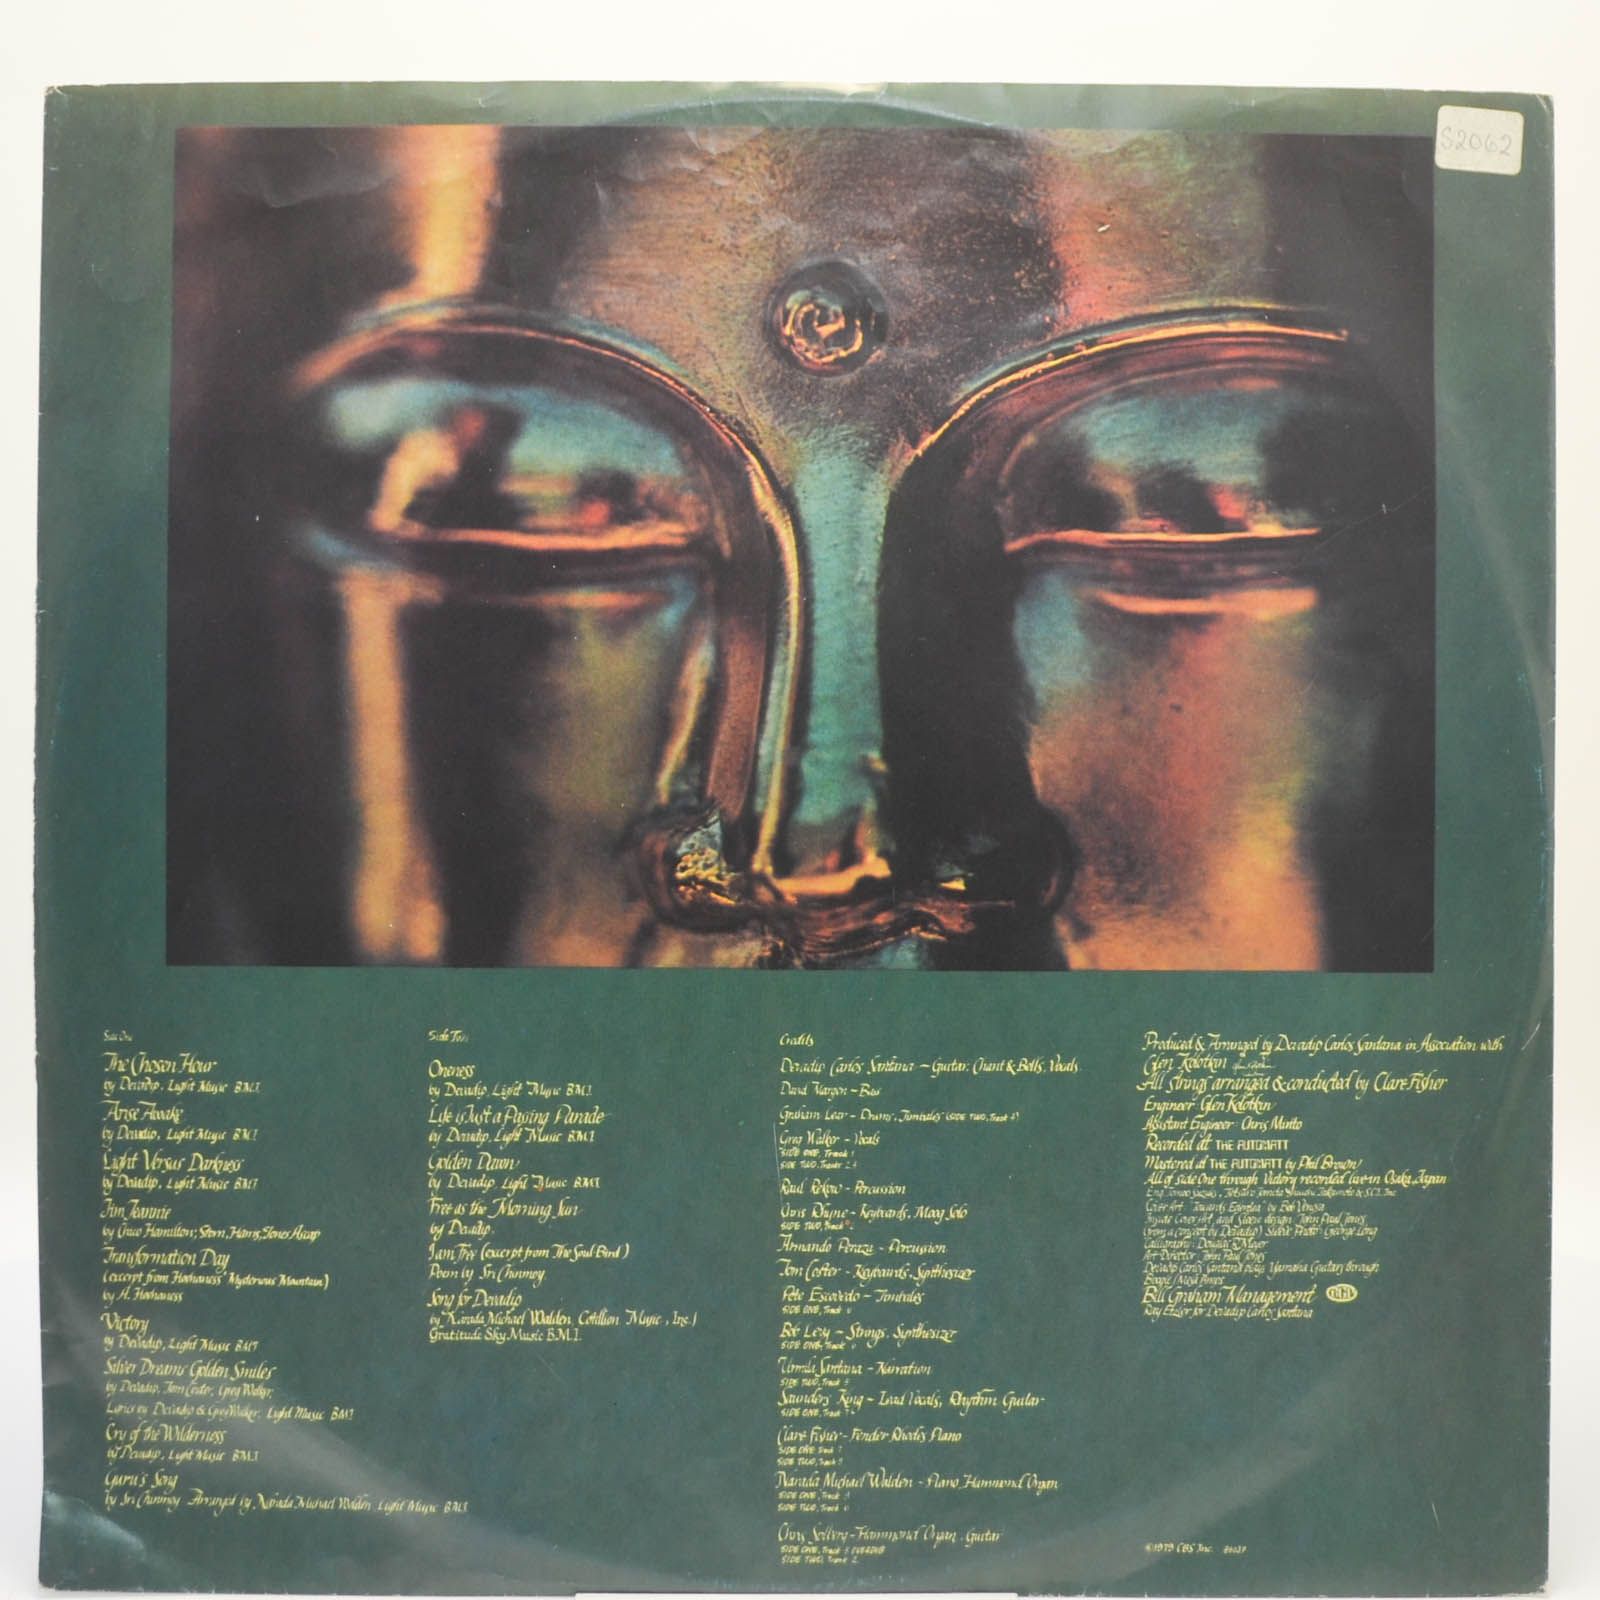 Devadip — Oneness (Silver Dreams - Golden Reality), 1979